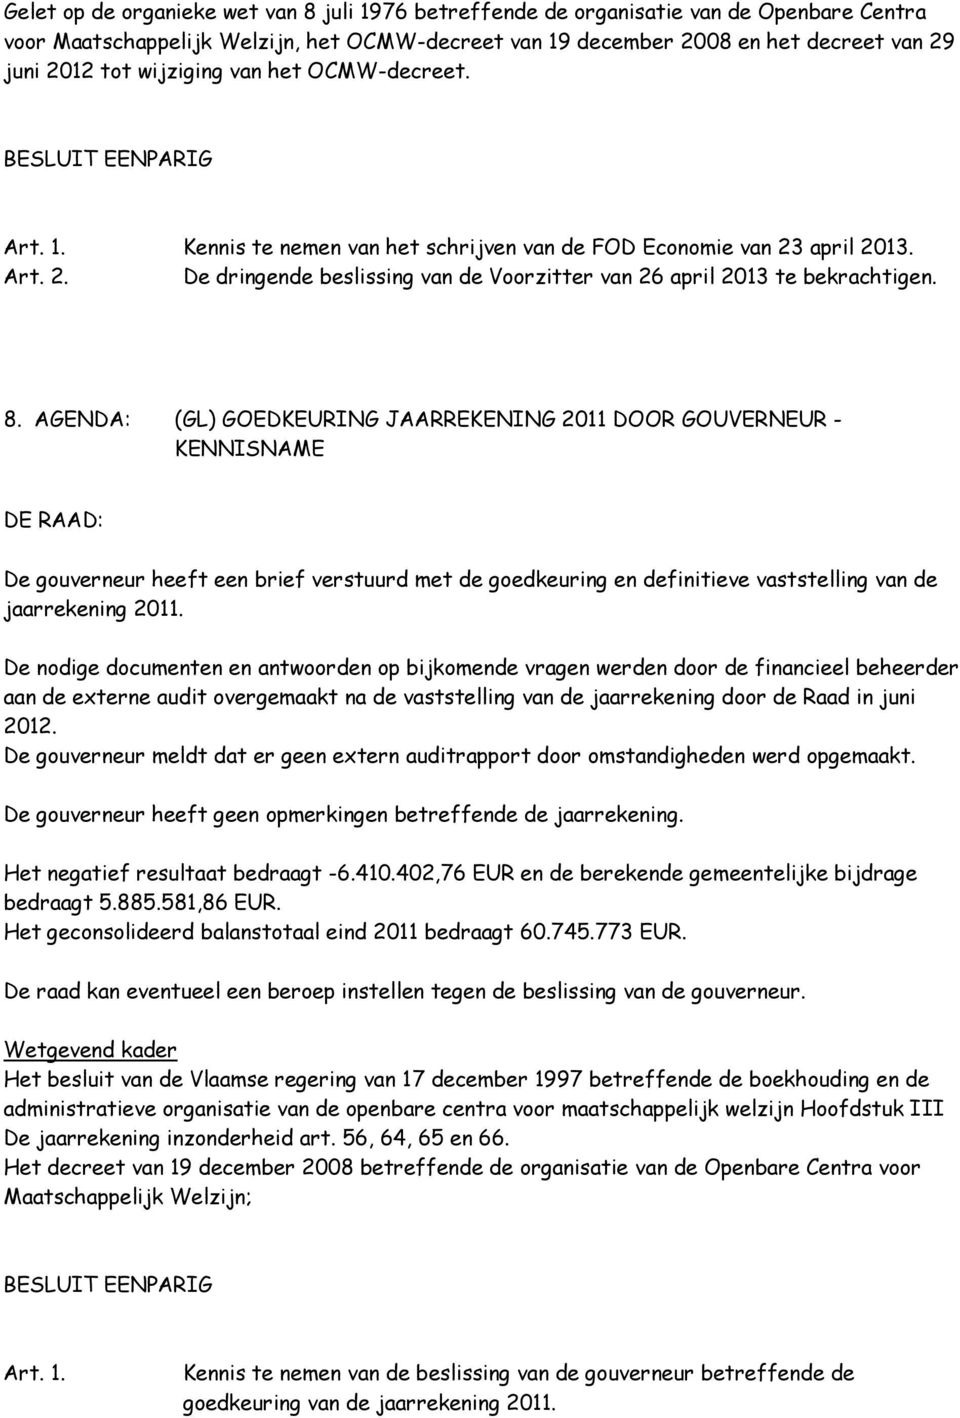 AGENDA: (GL) GOEDKEURING JAARREKENING 2011 DOOR GOUVERNEUR - KENNISNAME De gouverneur heeft een brief verstuurd met de goedkeuring en definitieve vaststelling van de jaarrekening 2011.